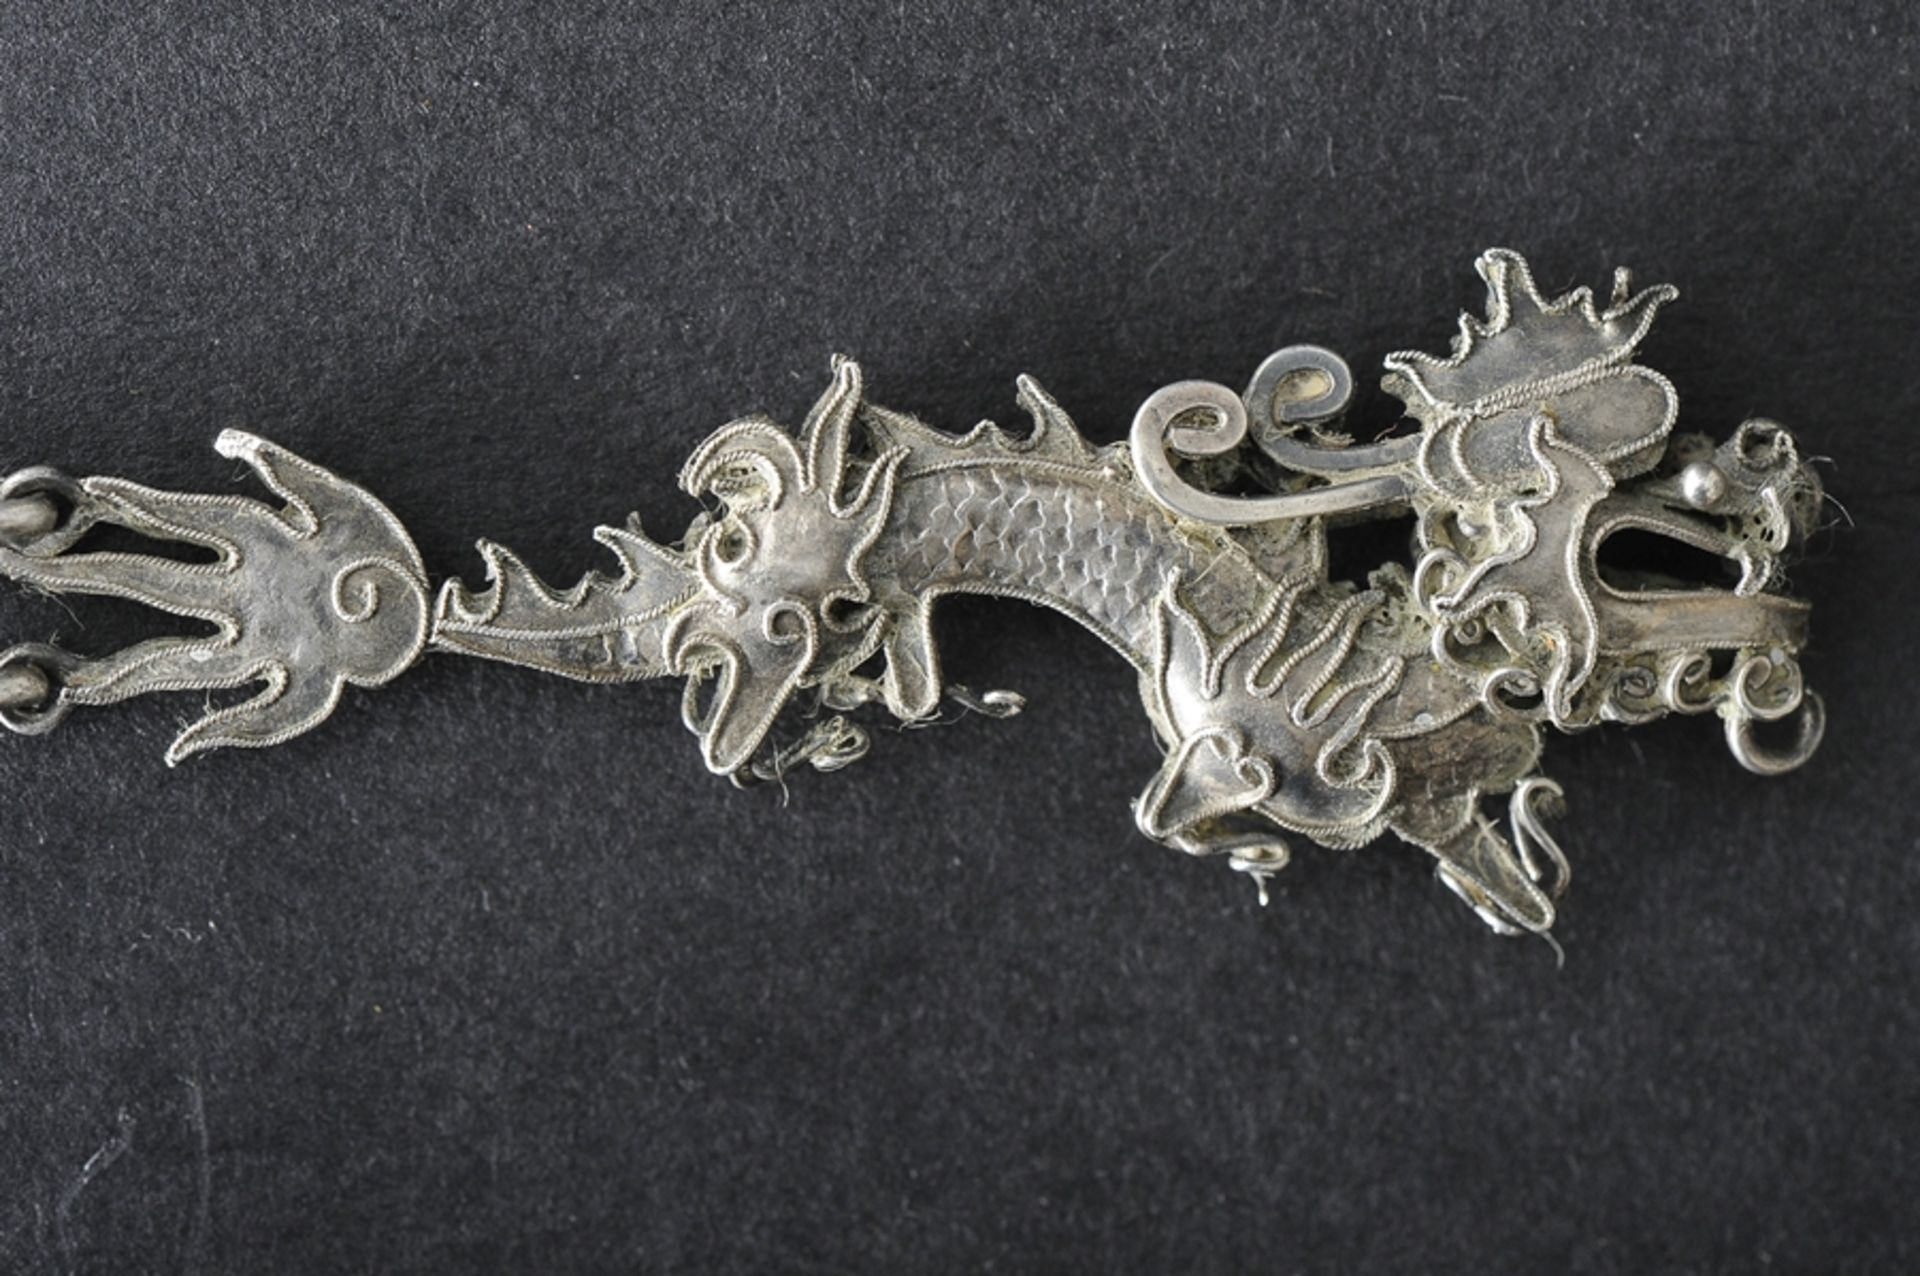 Mehrteiliger, chinesischer Münzanhänger um 1900, mit plastisch gestaltetem "Drachen" - Abschluss, d - Image 7 of 11